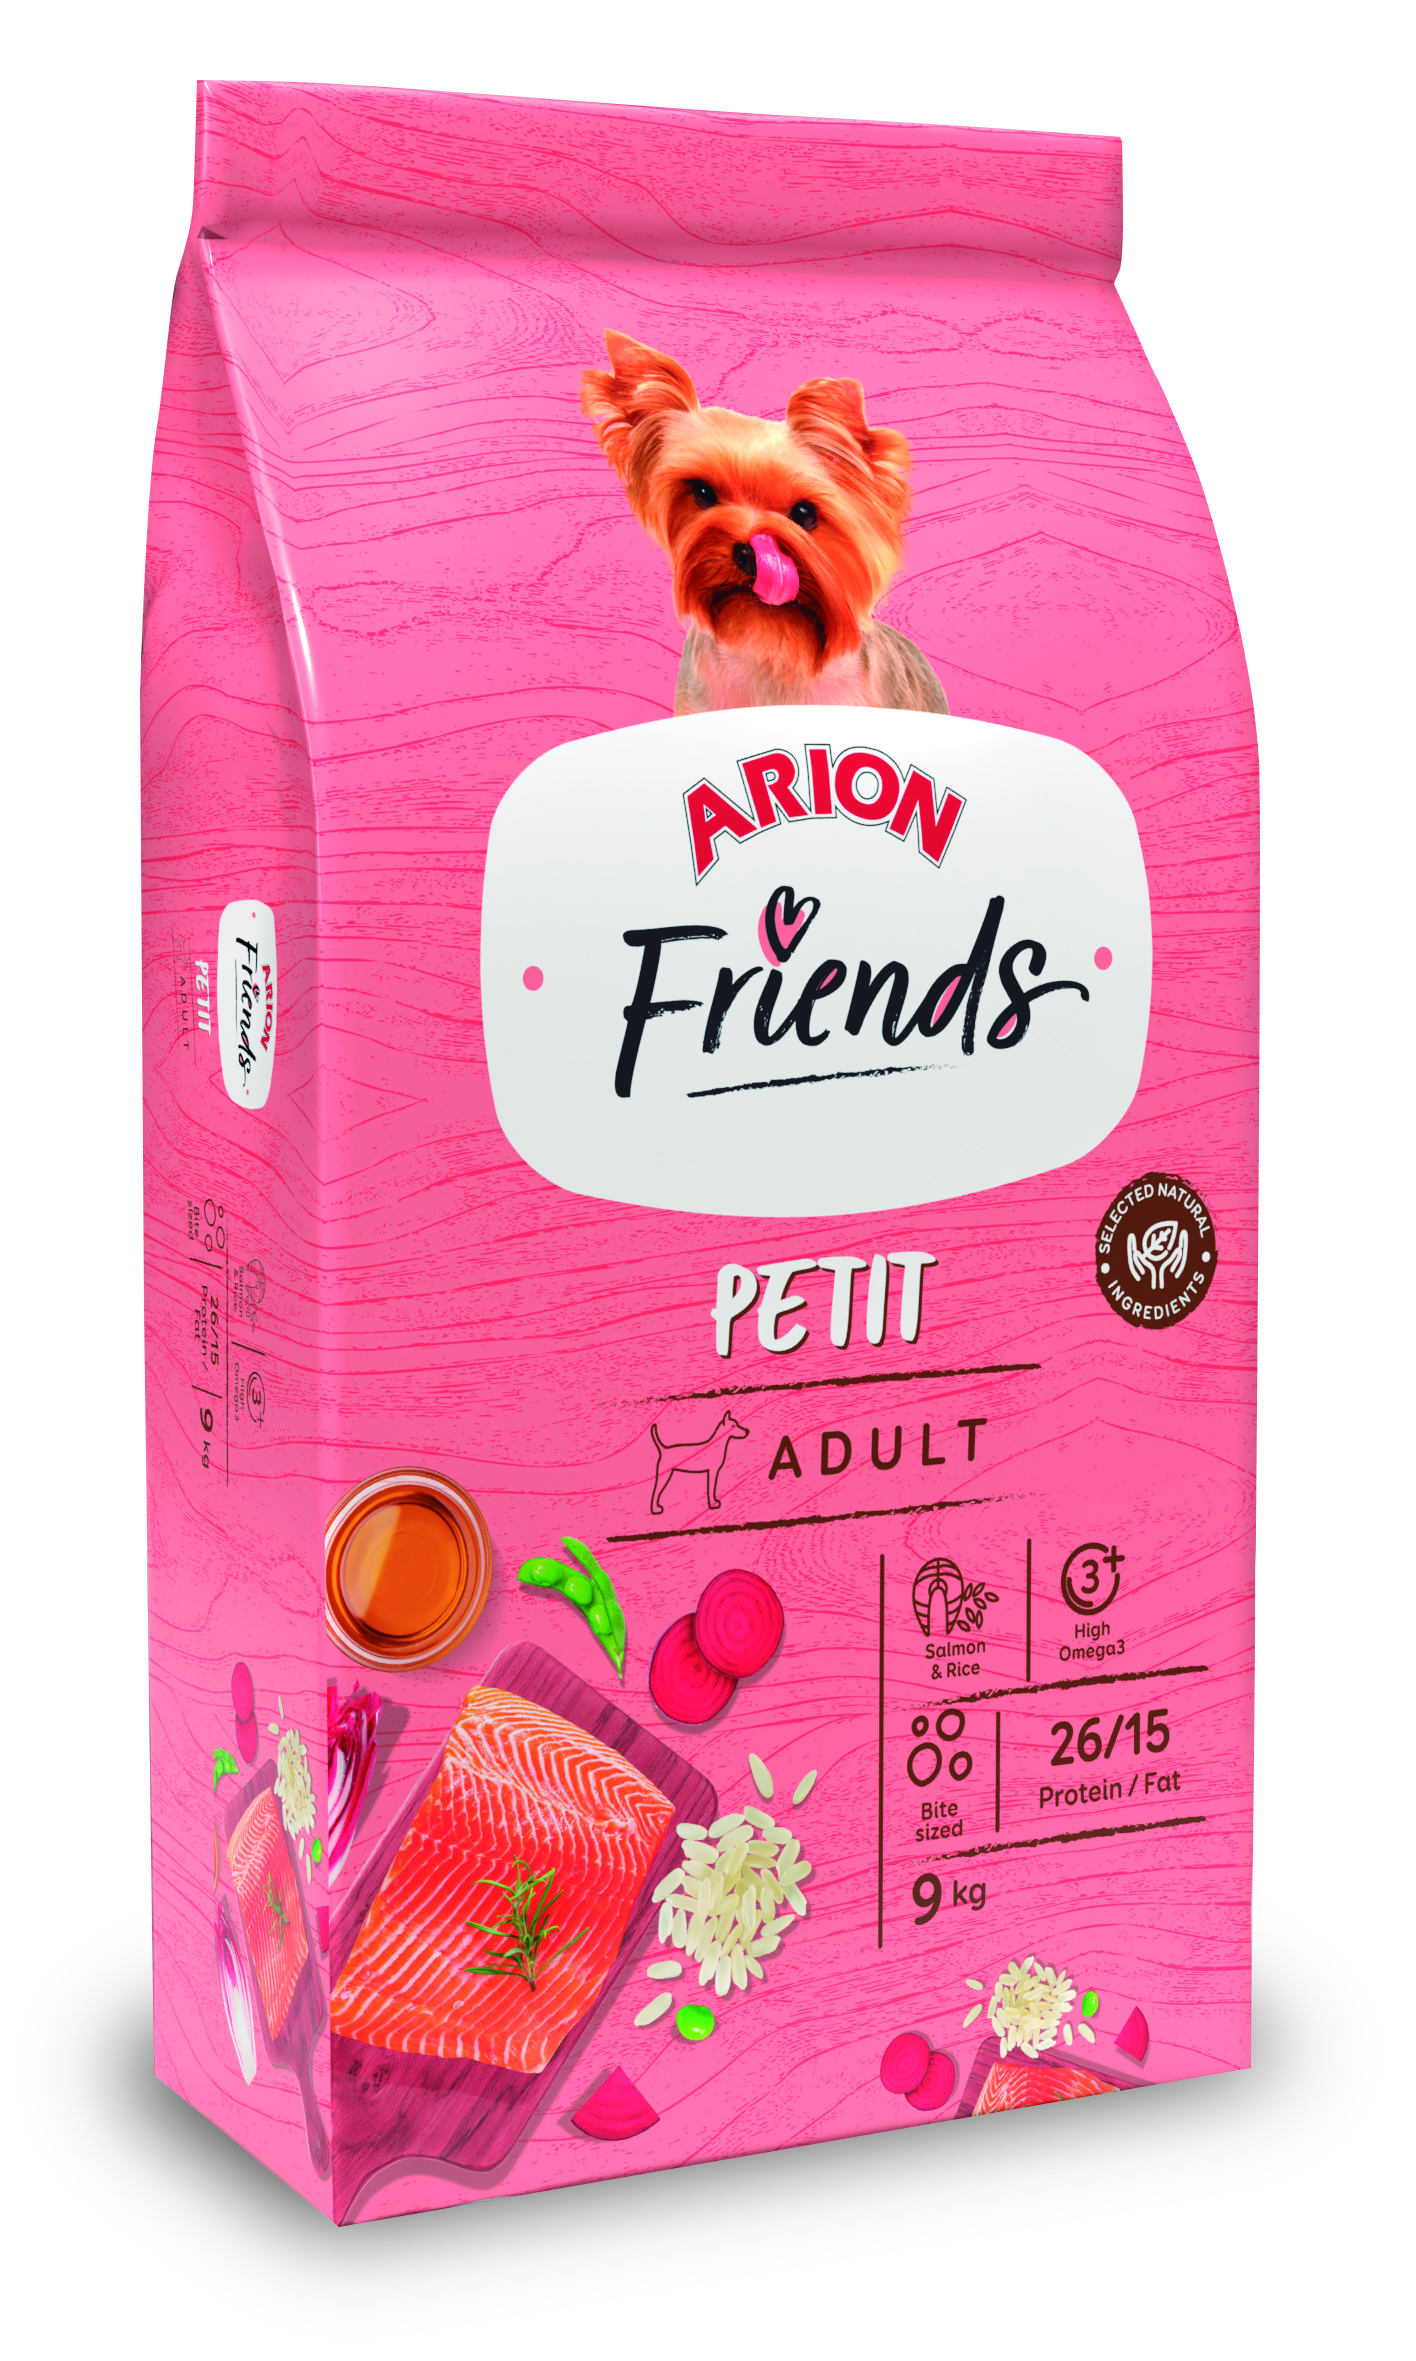 Arion Friends Adult “Petit” – 9Kg